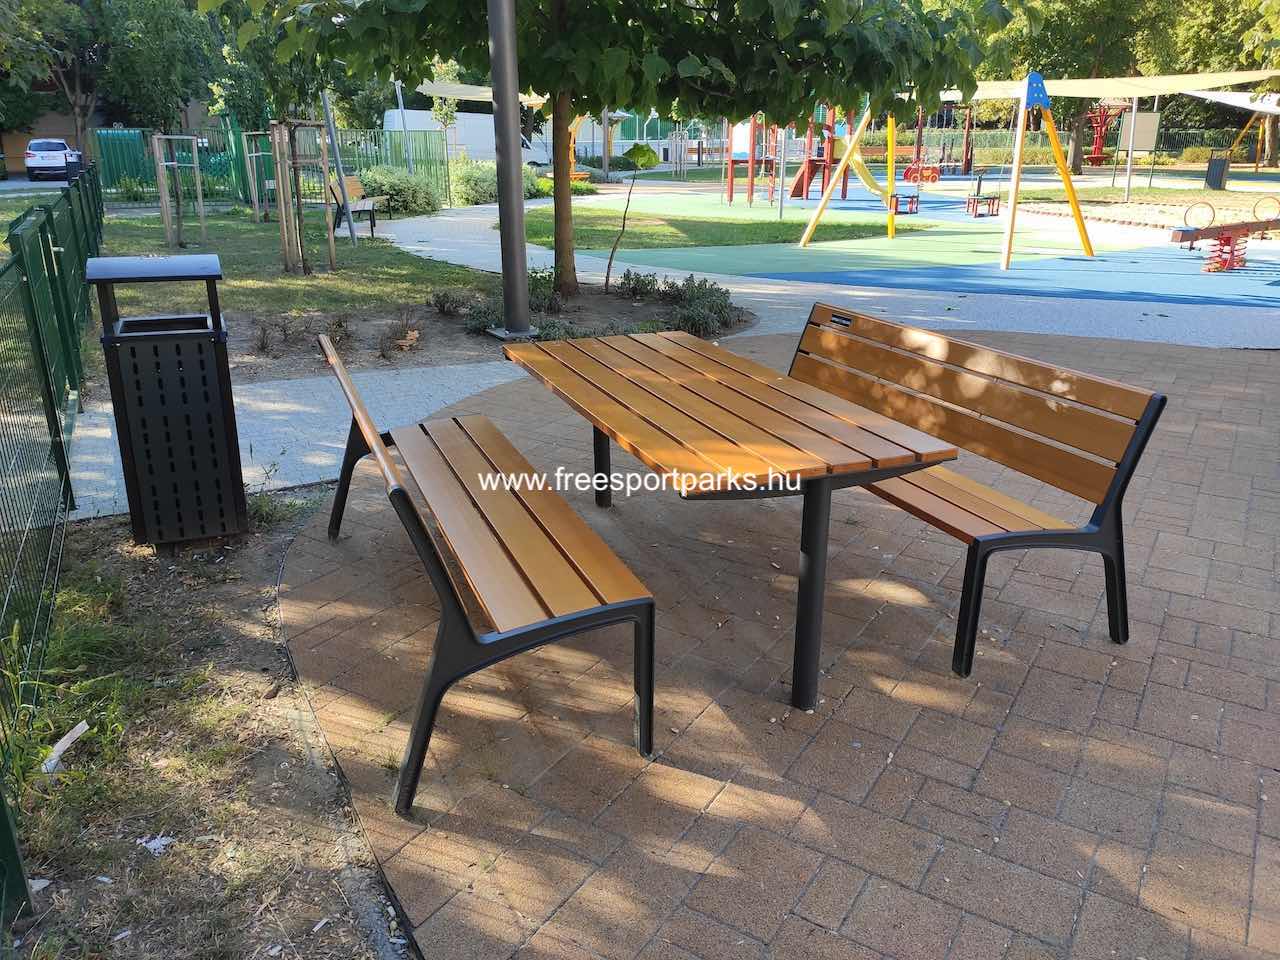 sakk asztal - Say Ferenc utcai park, Siófok - Free Sport Parks térkép